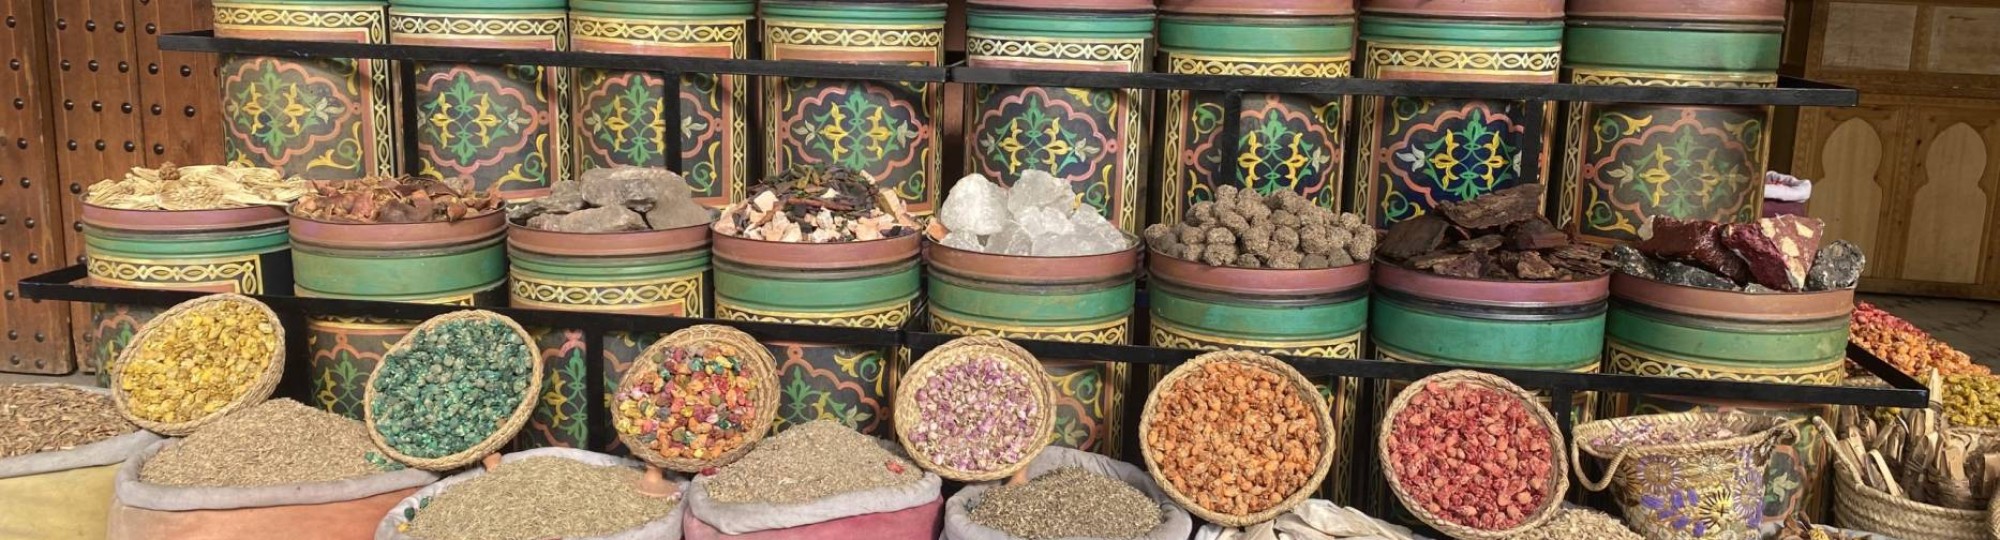 potten met kruiden in Marrakech